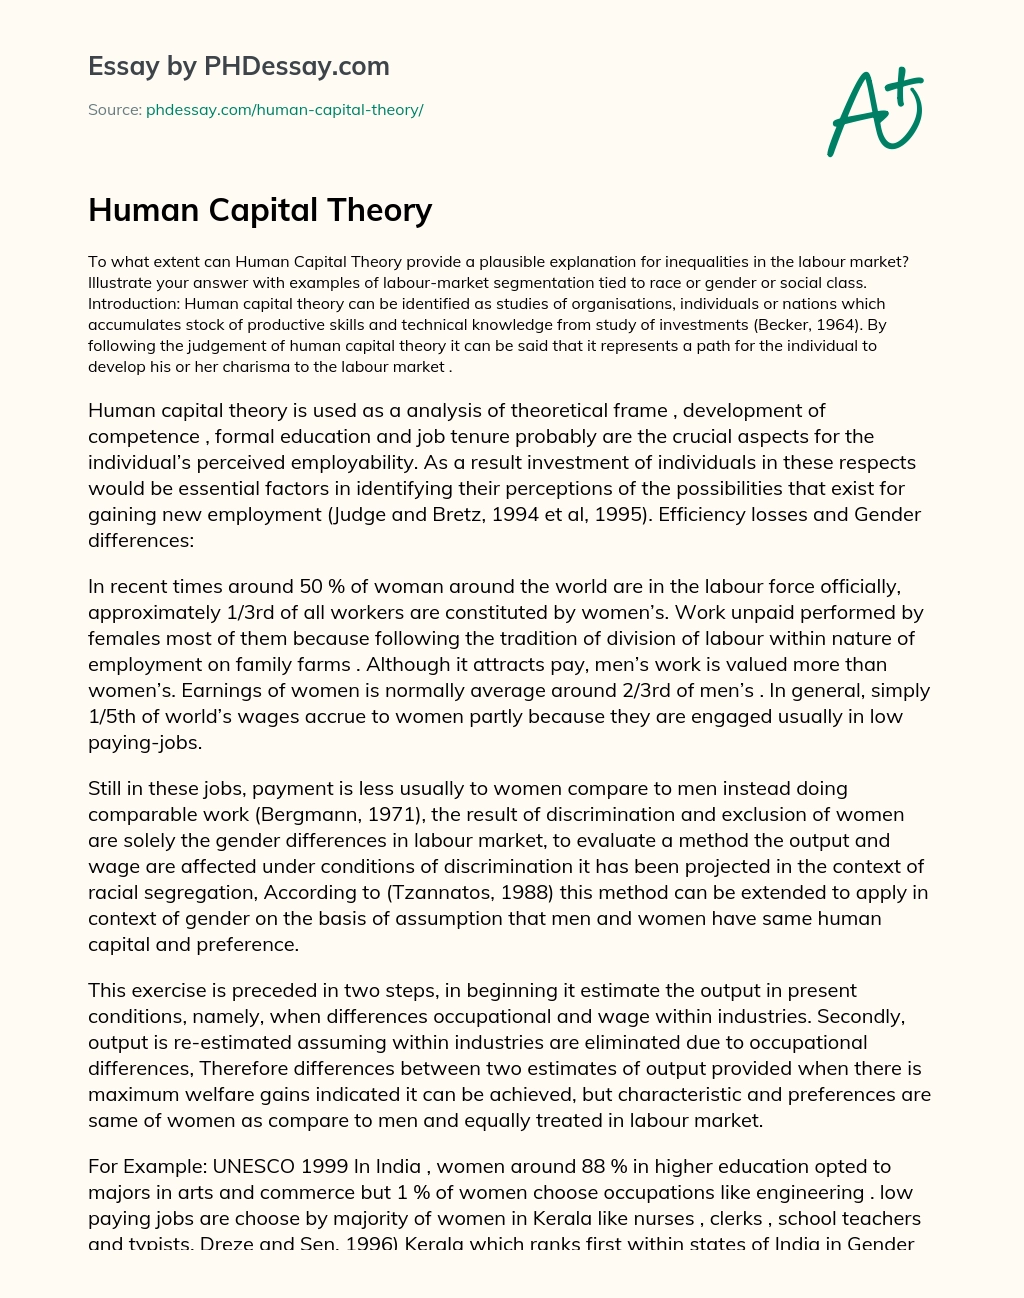 Human Capital Theory essay